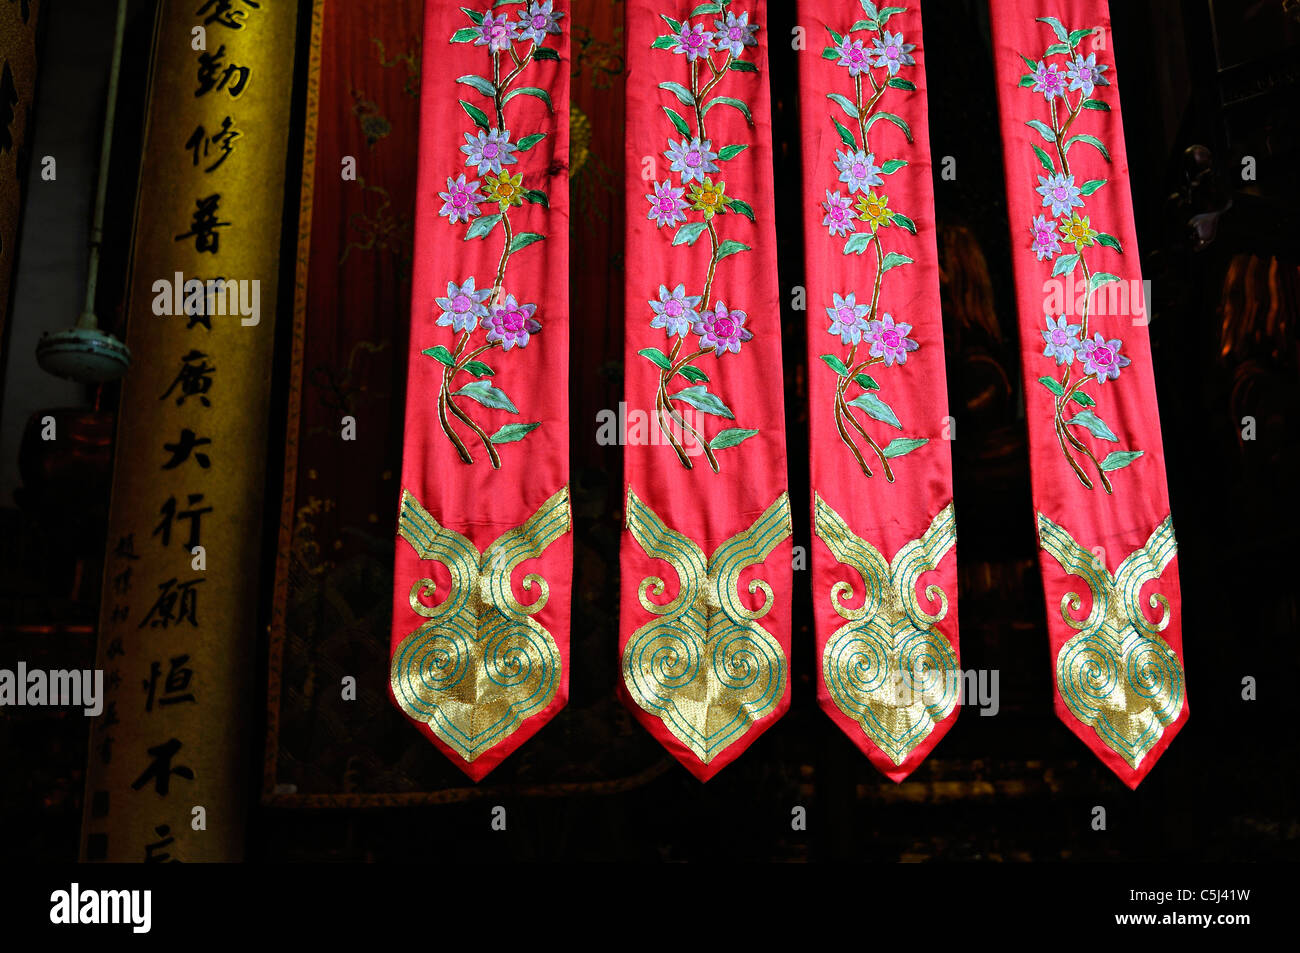 Sacra buddista foulard ricamati con fiori e medaglioni dorati, appeso in principale 'Quattro Re Celeste' hall del Foto Stock